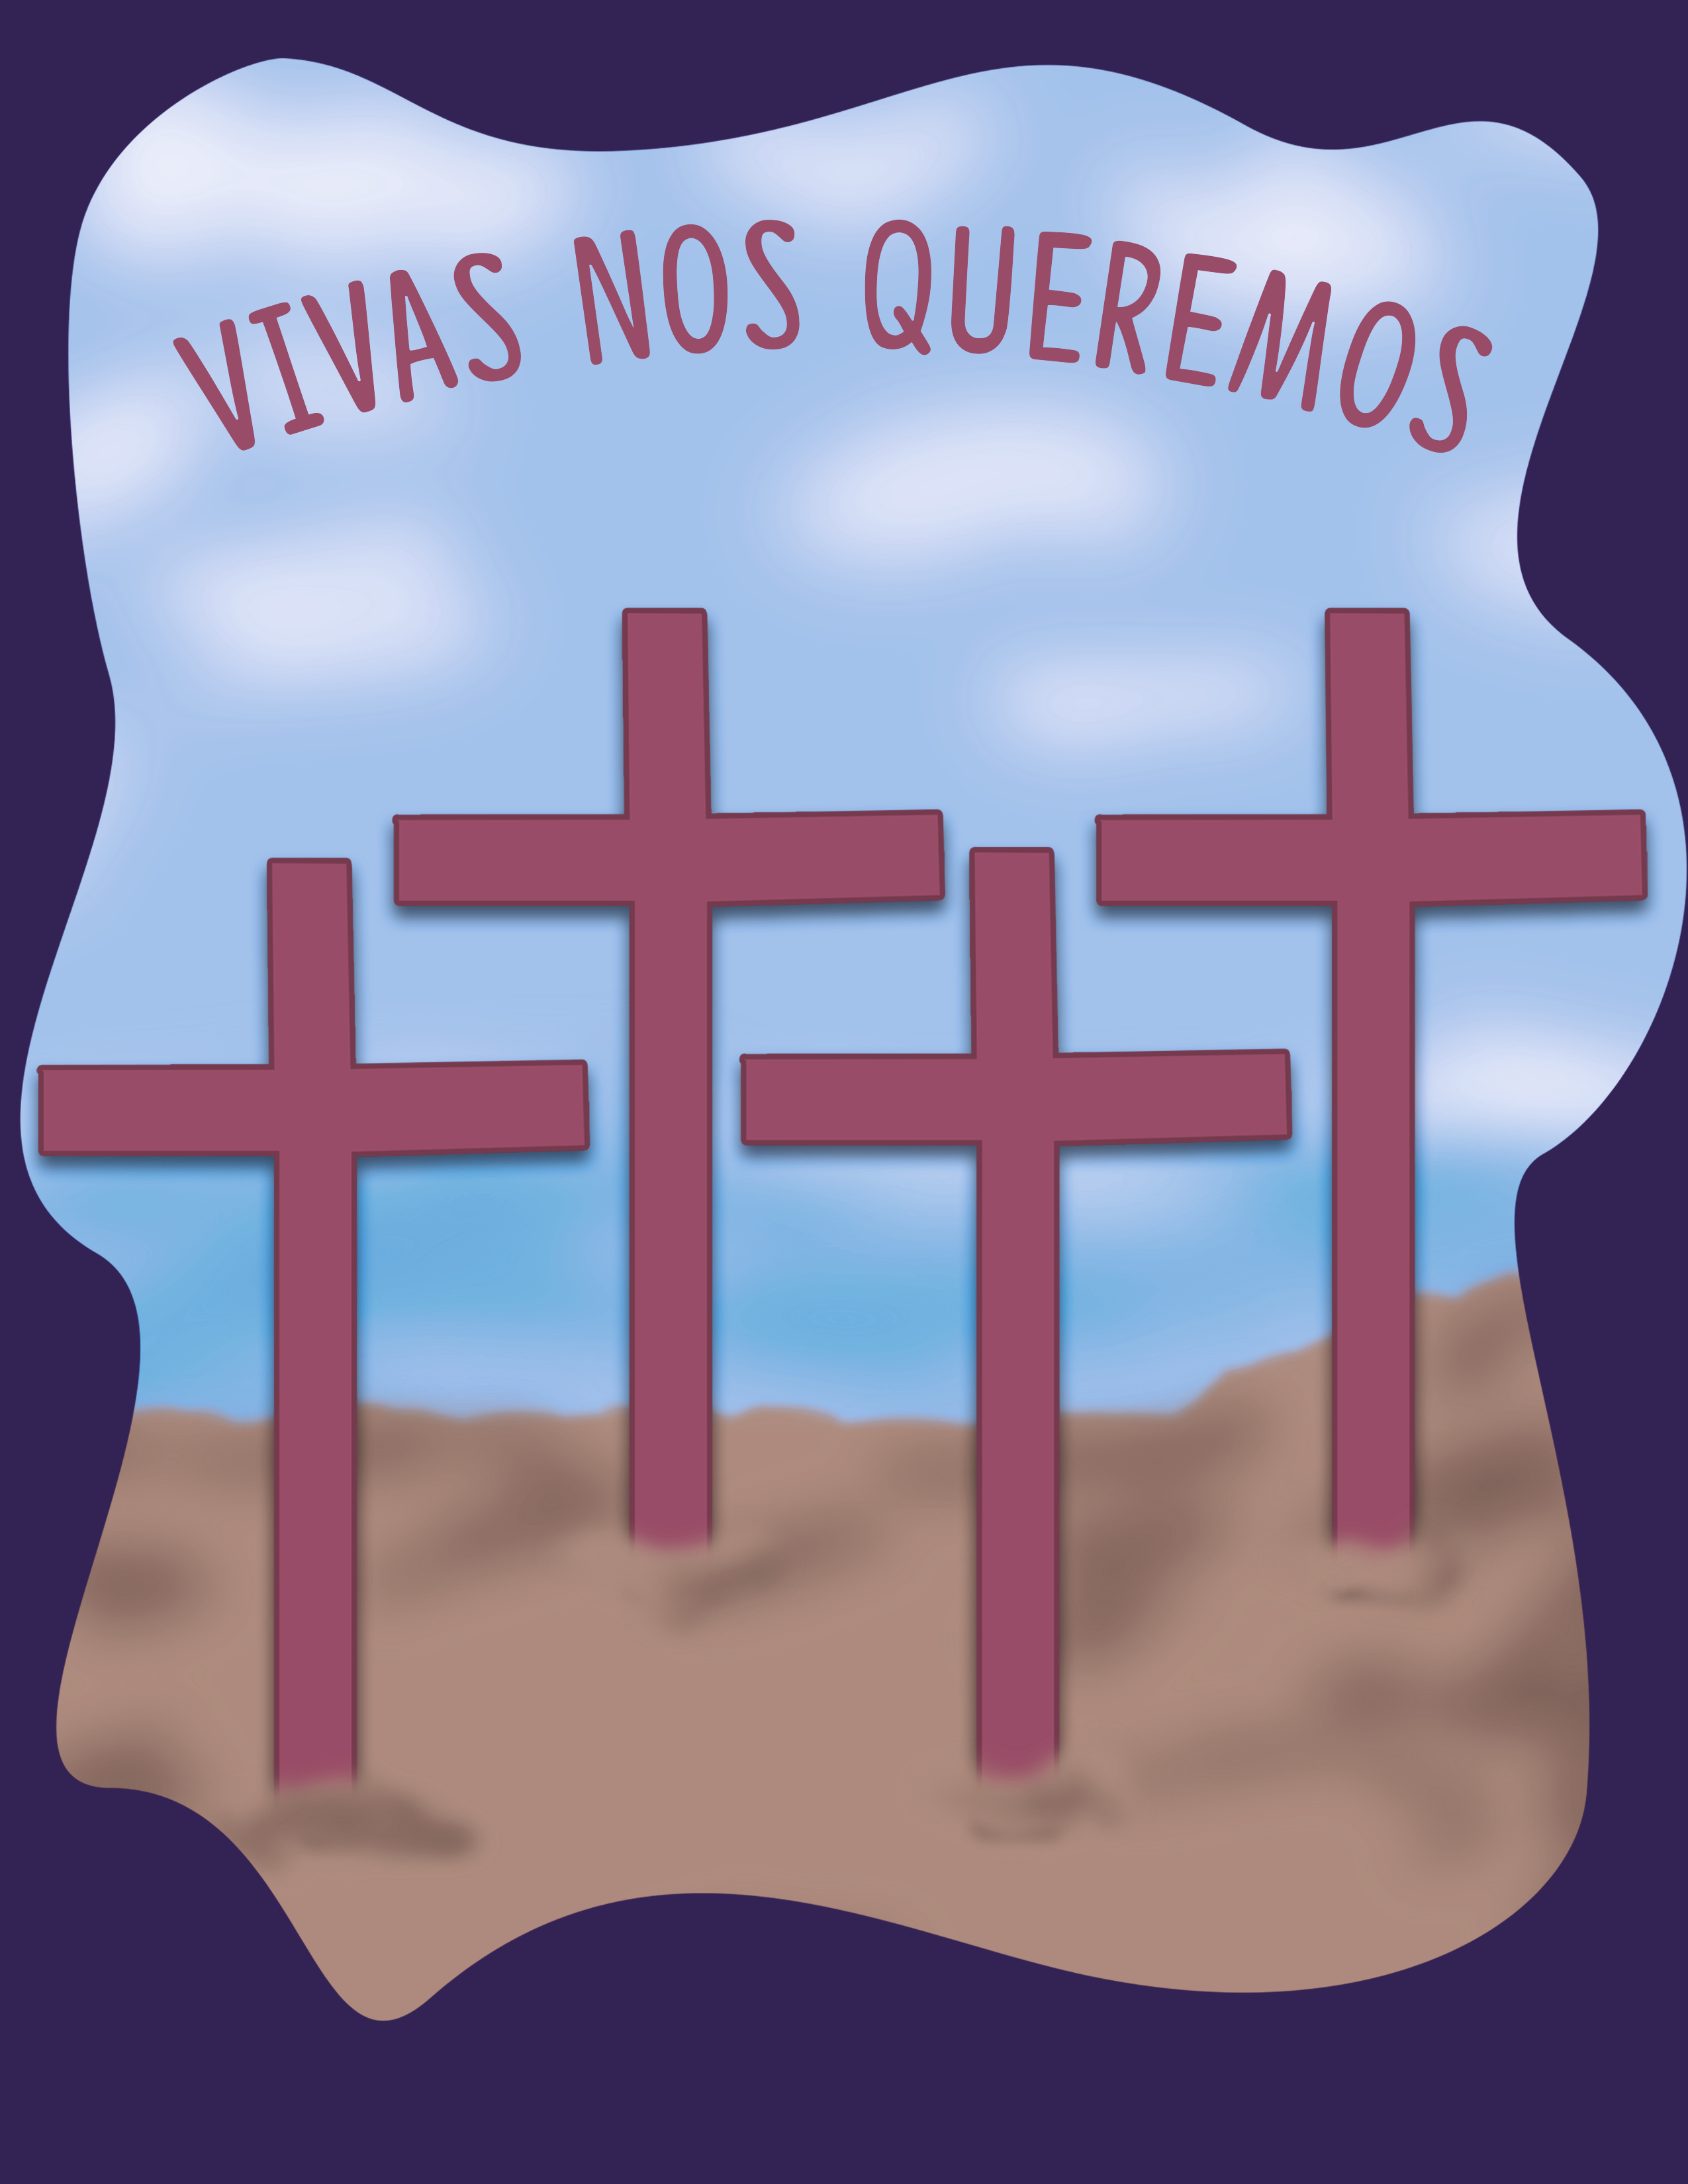 Realizan misa y revelan obra artística en memoria de Monse, víctima de feminicidio en Puebla